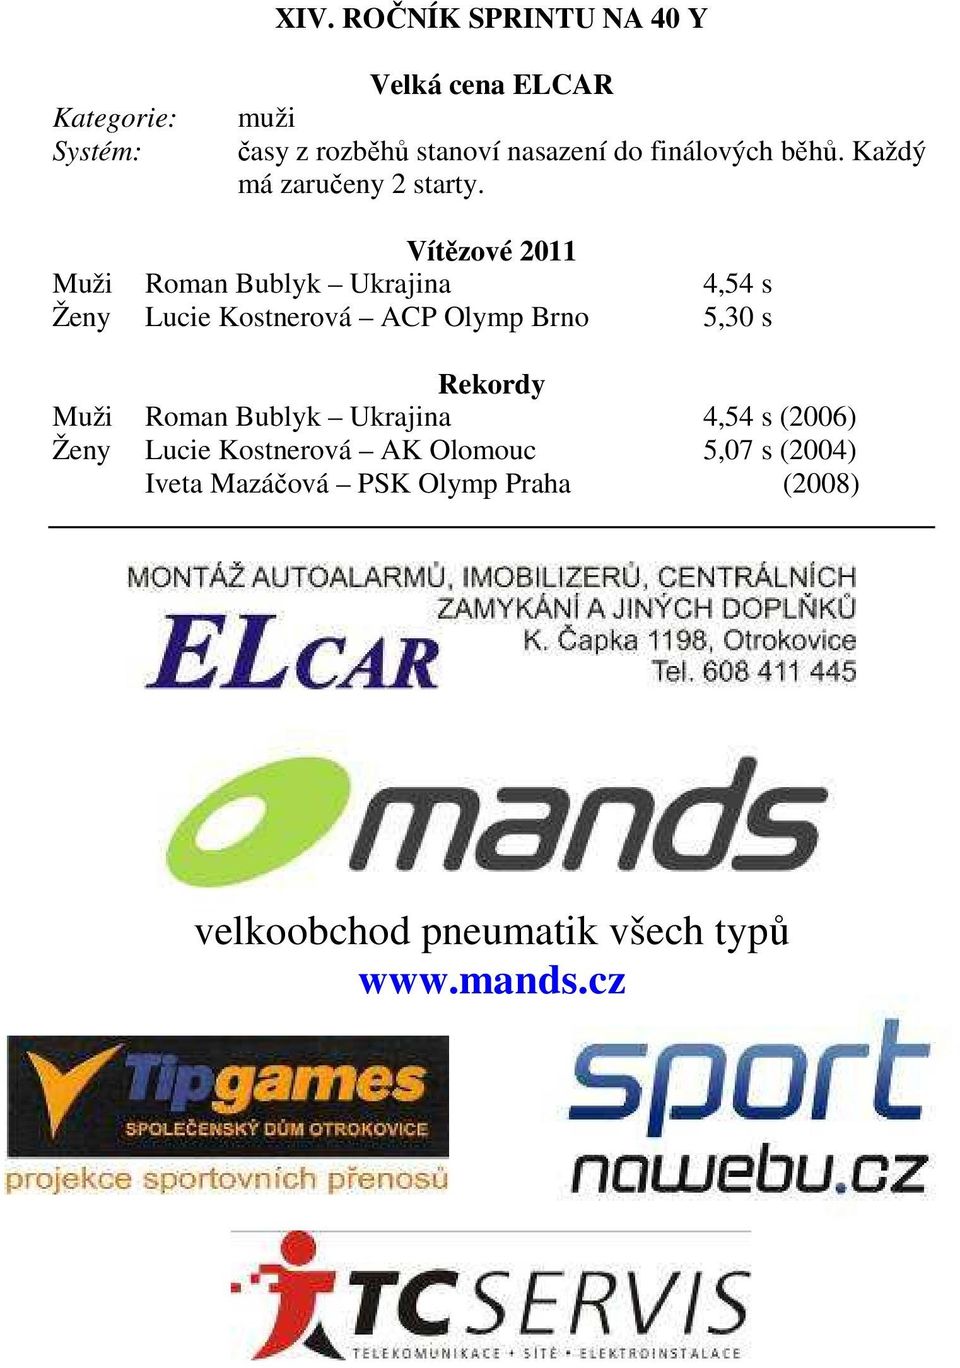 Vítězové 2011 Muži Roman Bublyk Ukrajina 4,54 s Ženy Lucie Kostnerová ACP Olymp Brno 5,30 s Rekordy Muži